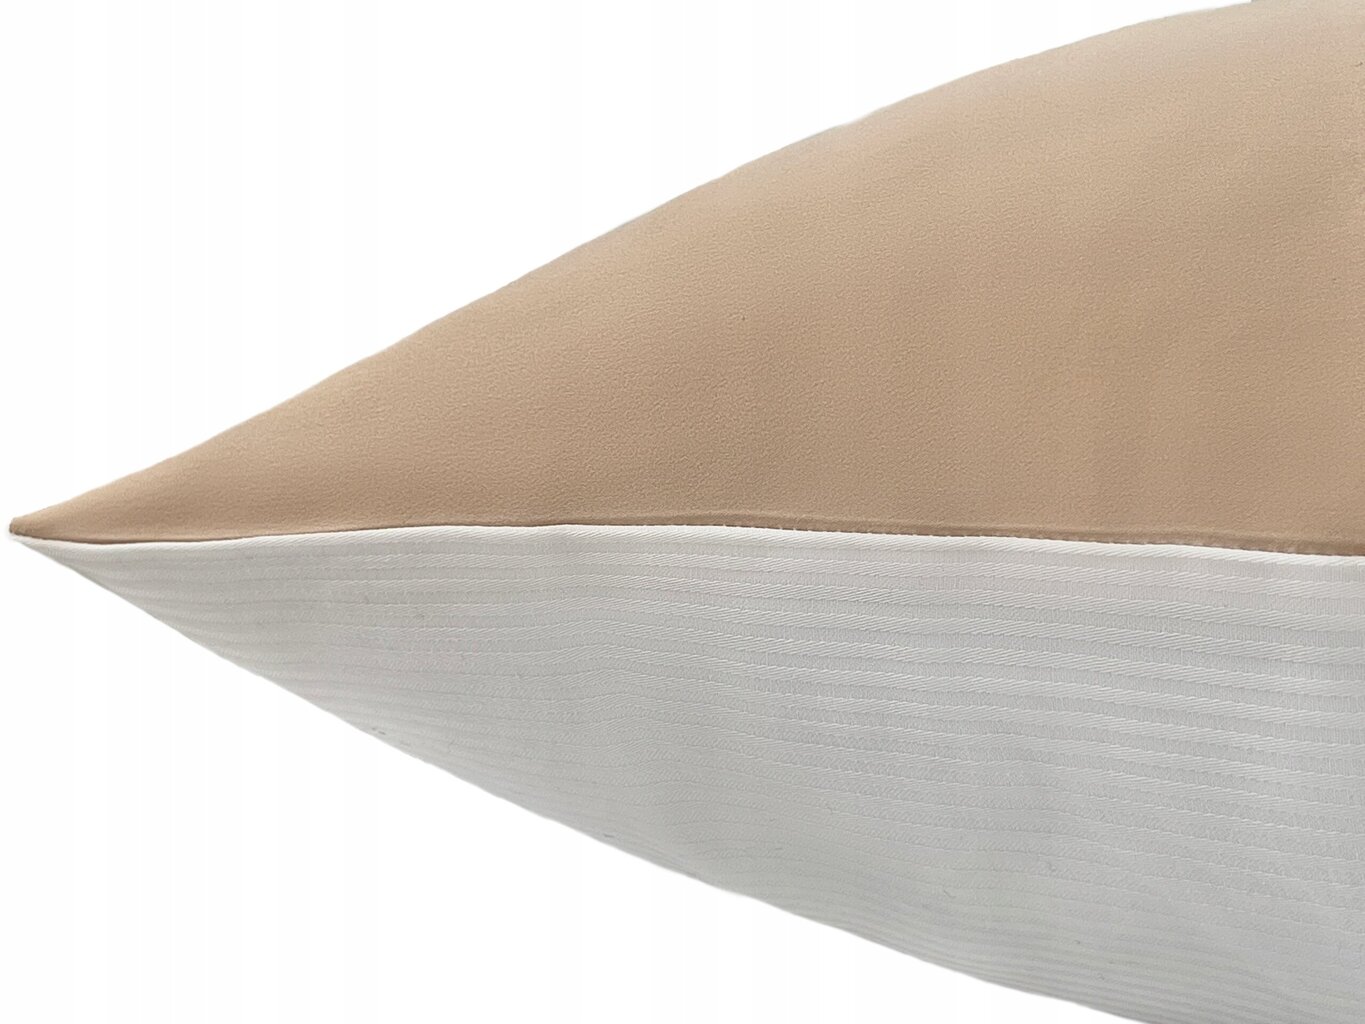 Queen Sleep pagalvės užvalkalas цена и информация | Dekoratyvinės pagalvėlės ir užvalkalai | pigu.lt